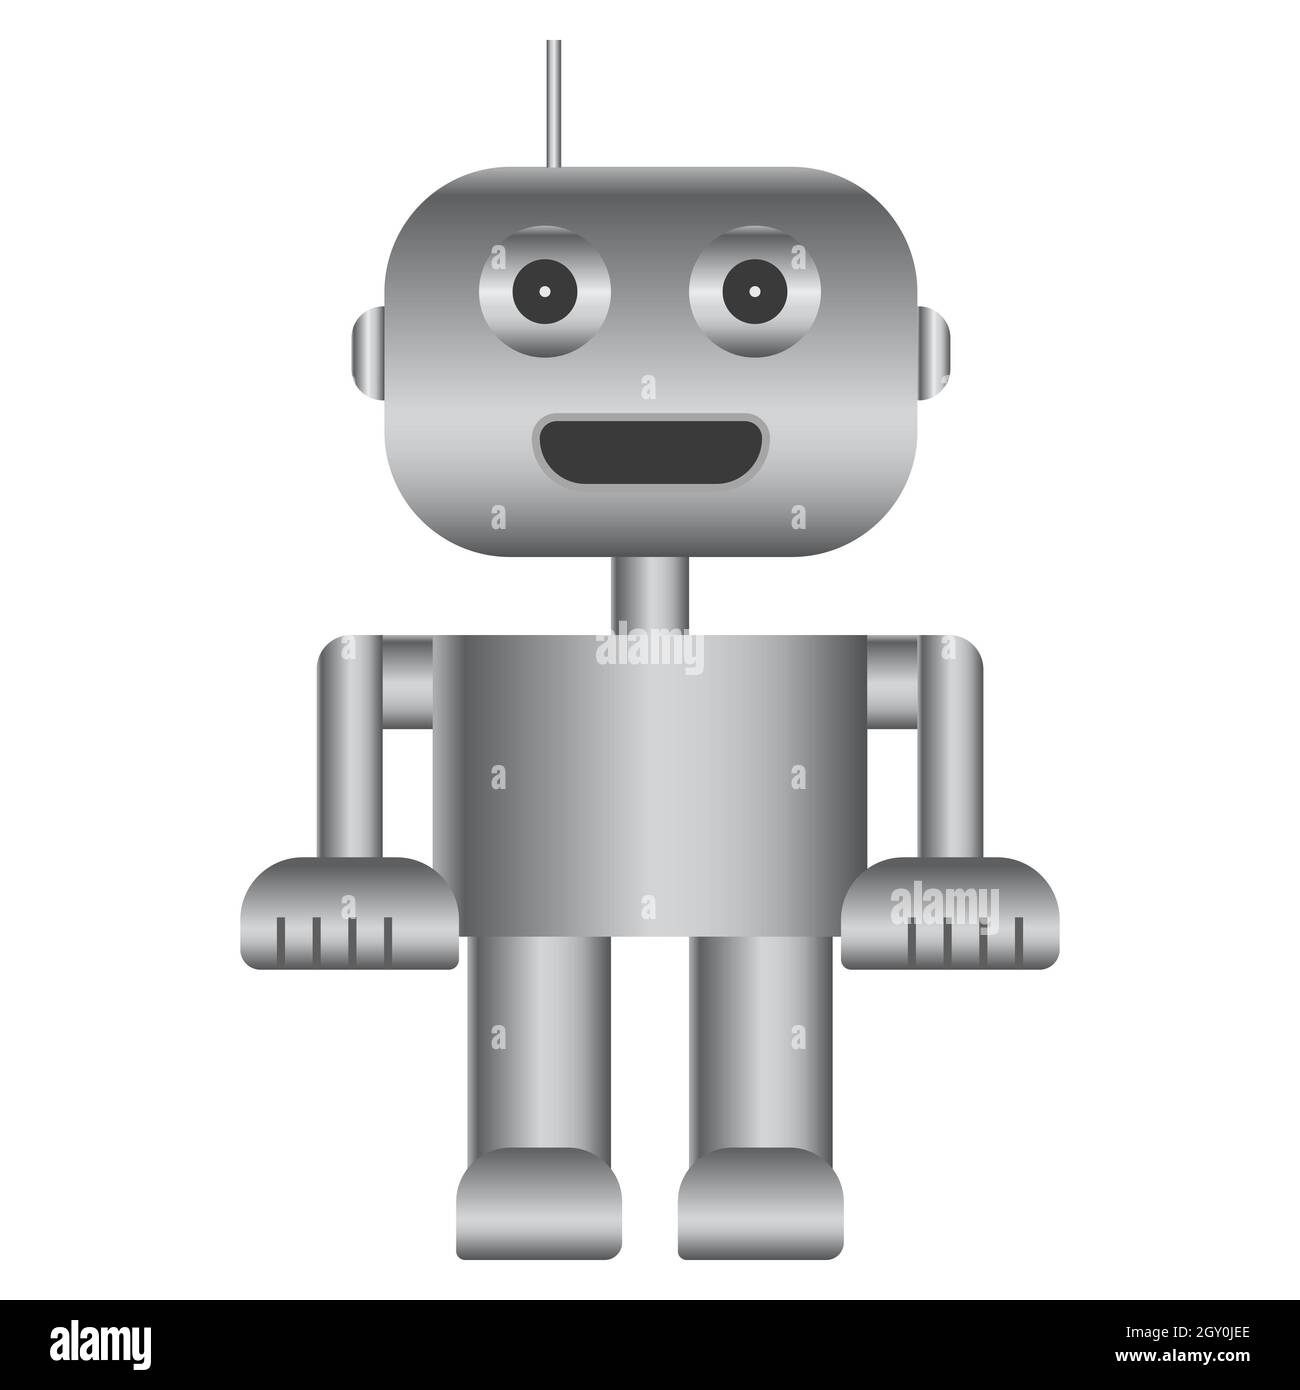 Robot simple Imágenes recortadas de stock - Página 2 - Alamy